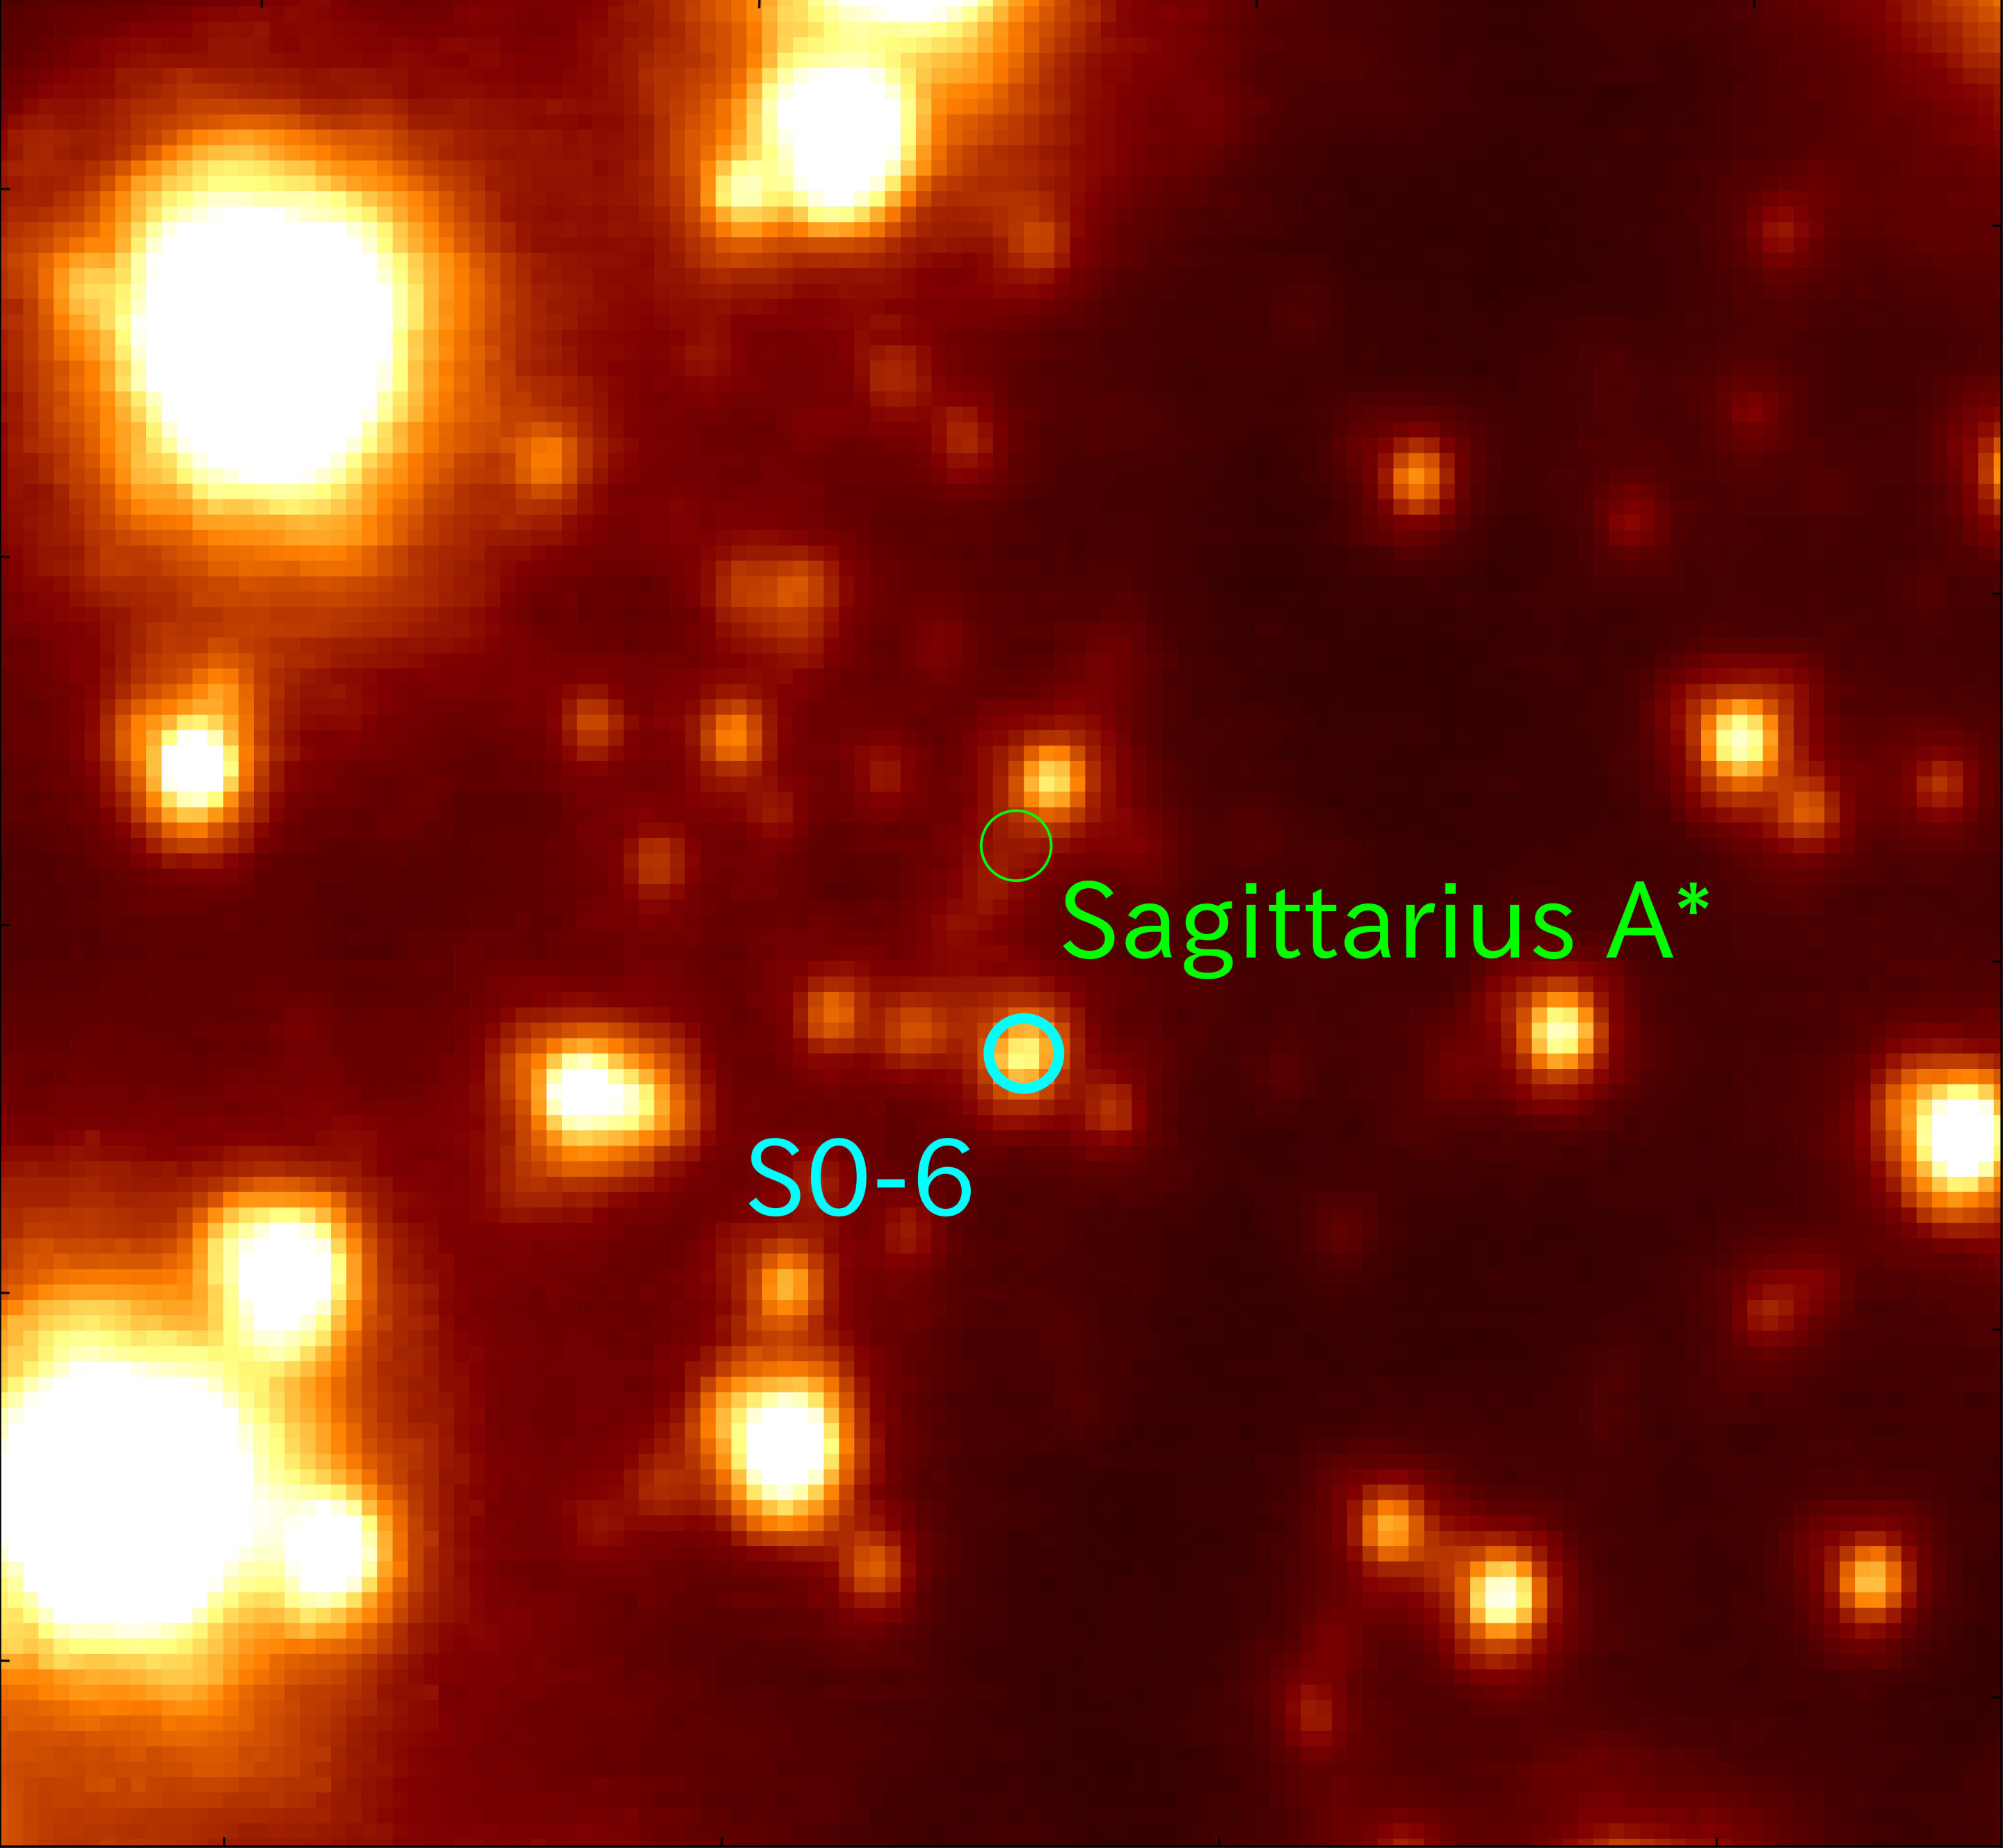 Gwiazdy pozagalaktyczne w Drodze Mlecznej, ważniejsze wskazówki językowe i pary radzące sobie z koronawirusem